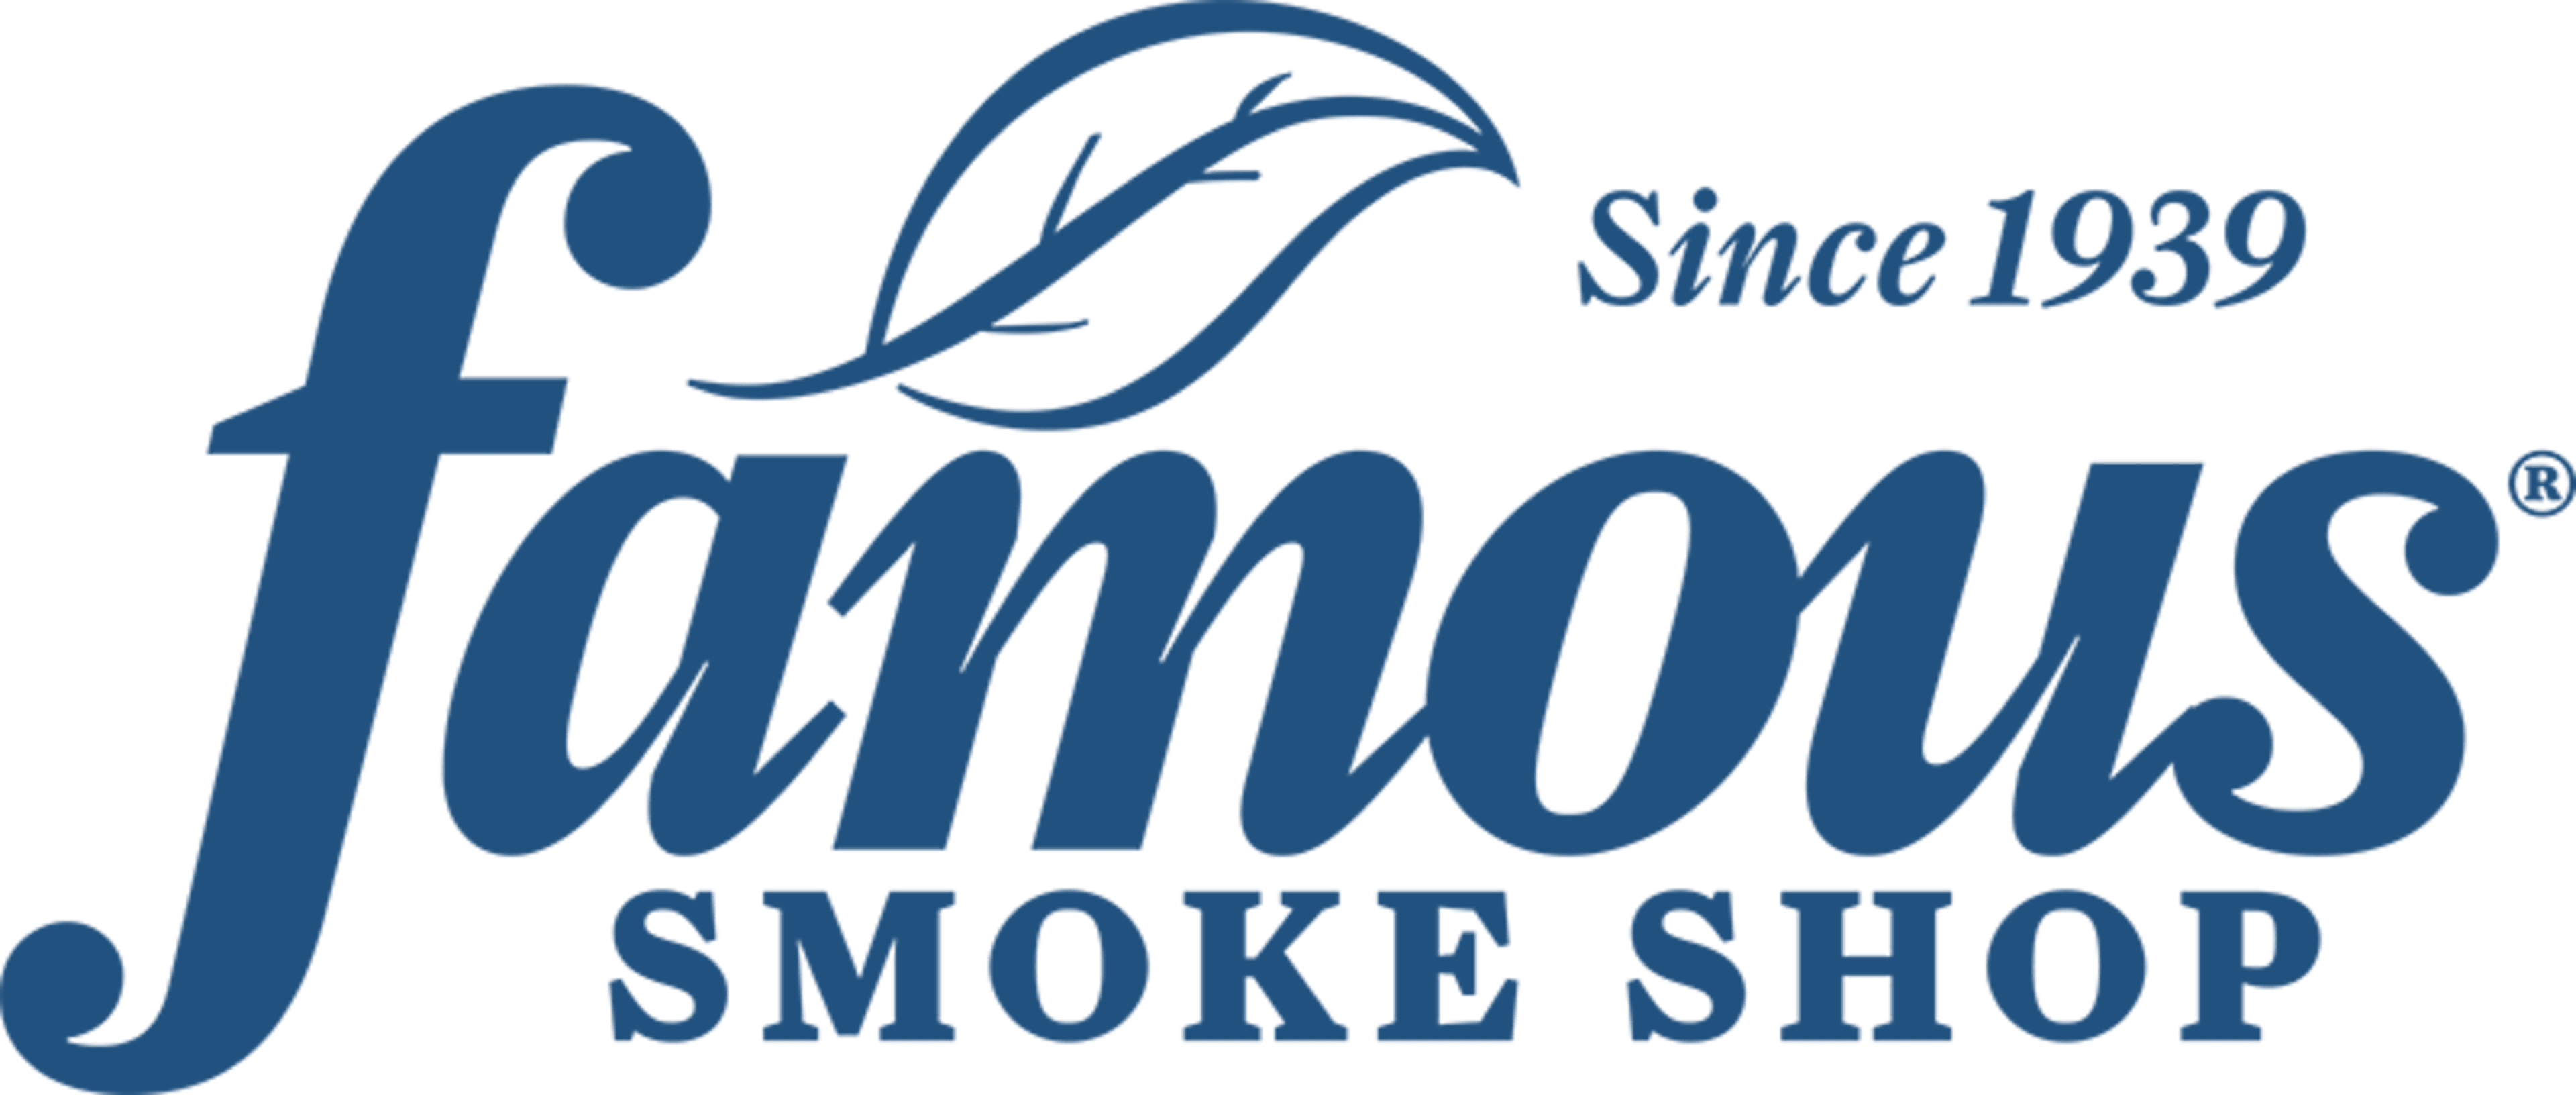 Famous Smoke Shop Code